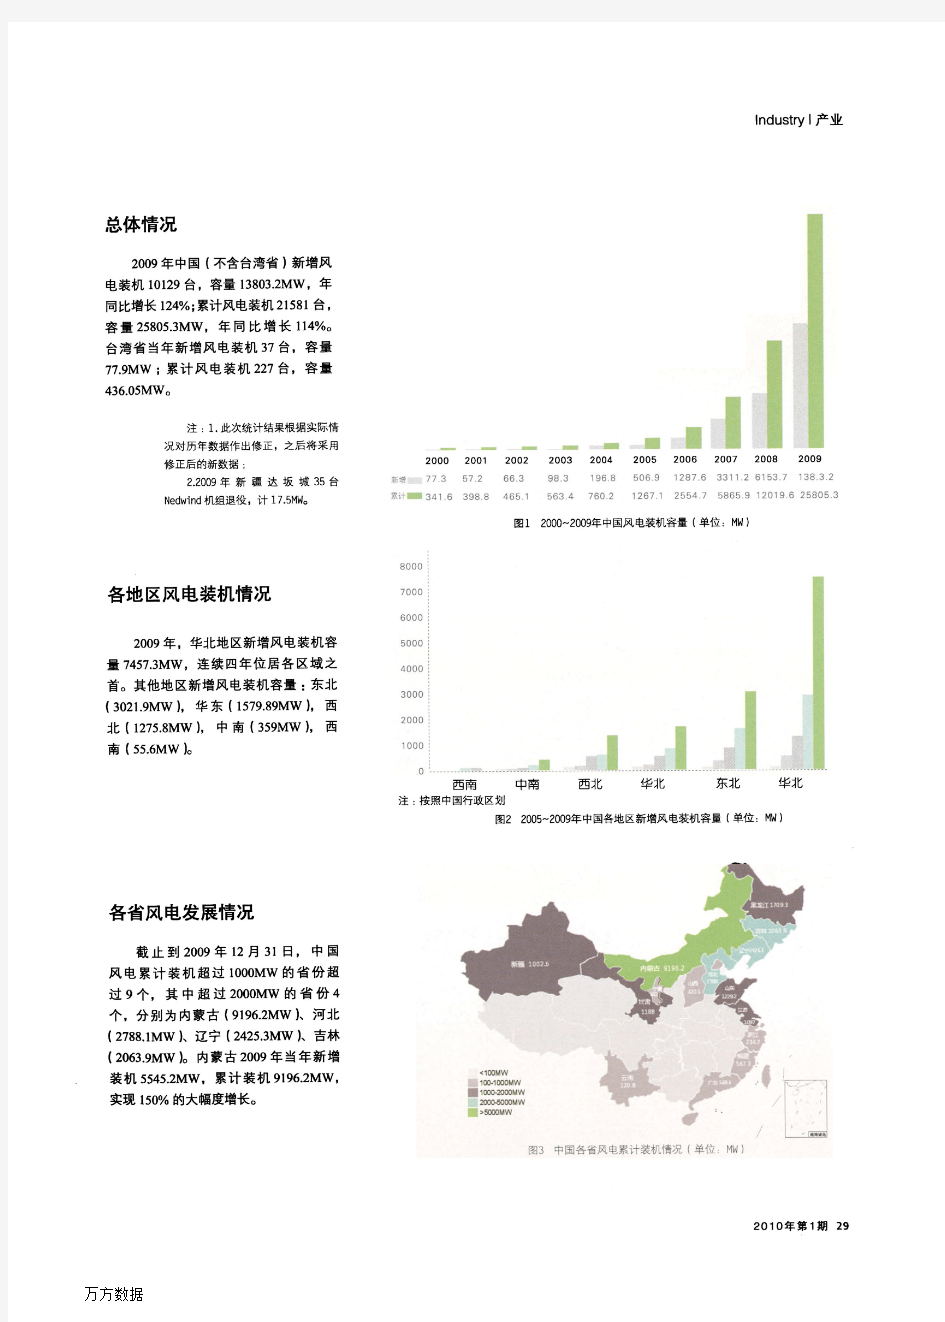 2009年中国风电装机容量统计